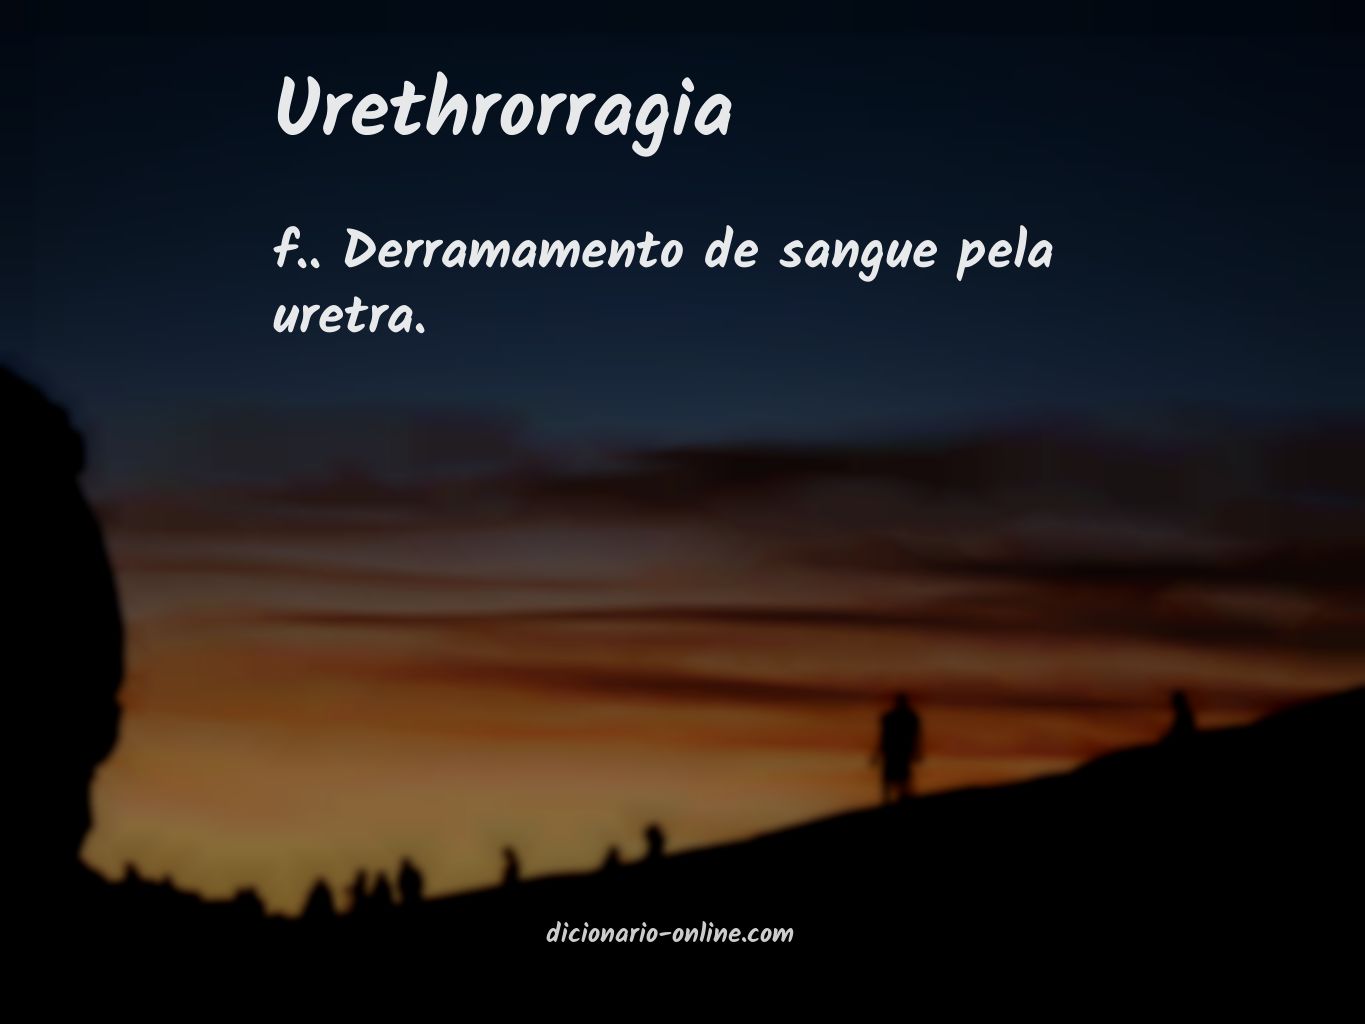 Significado de urethrorragia